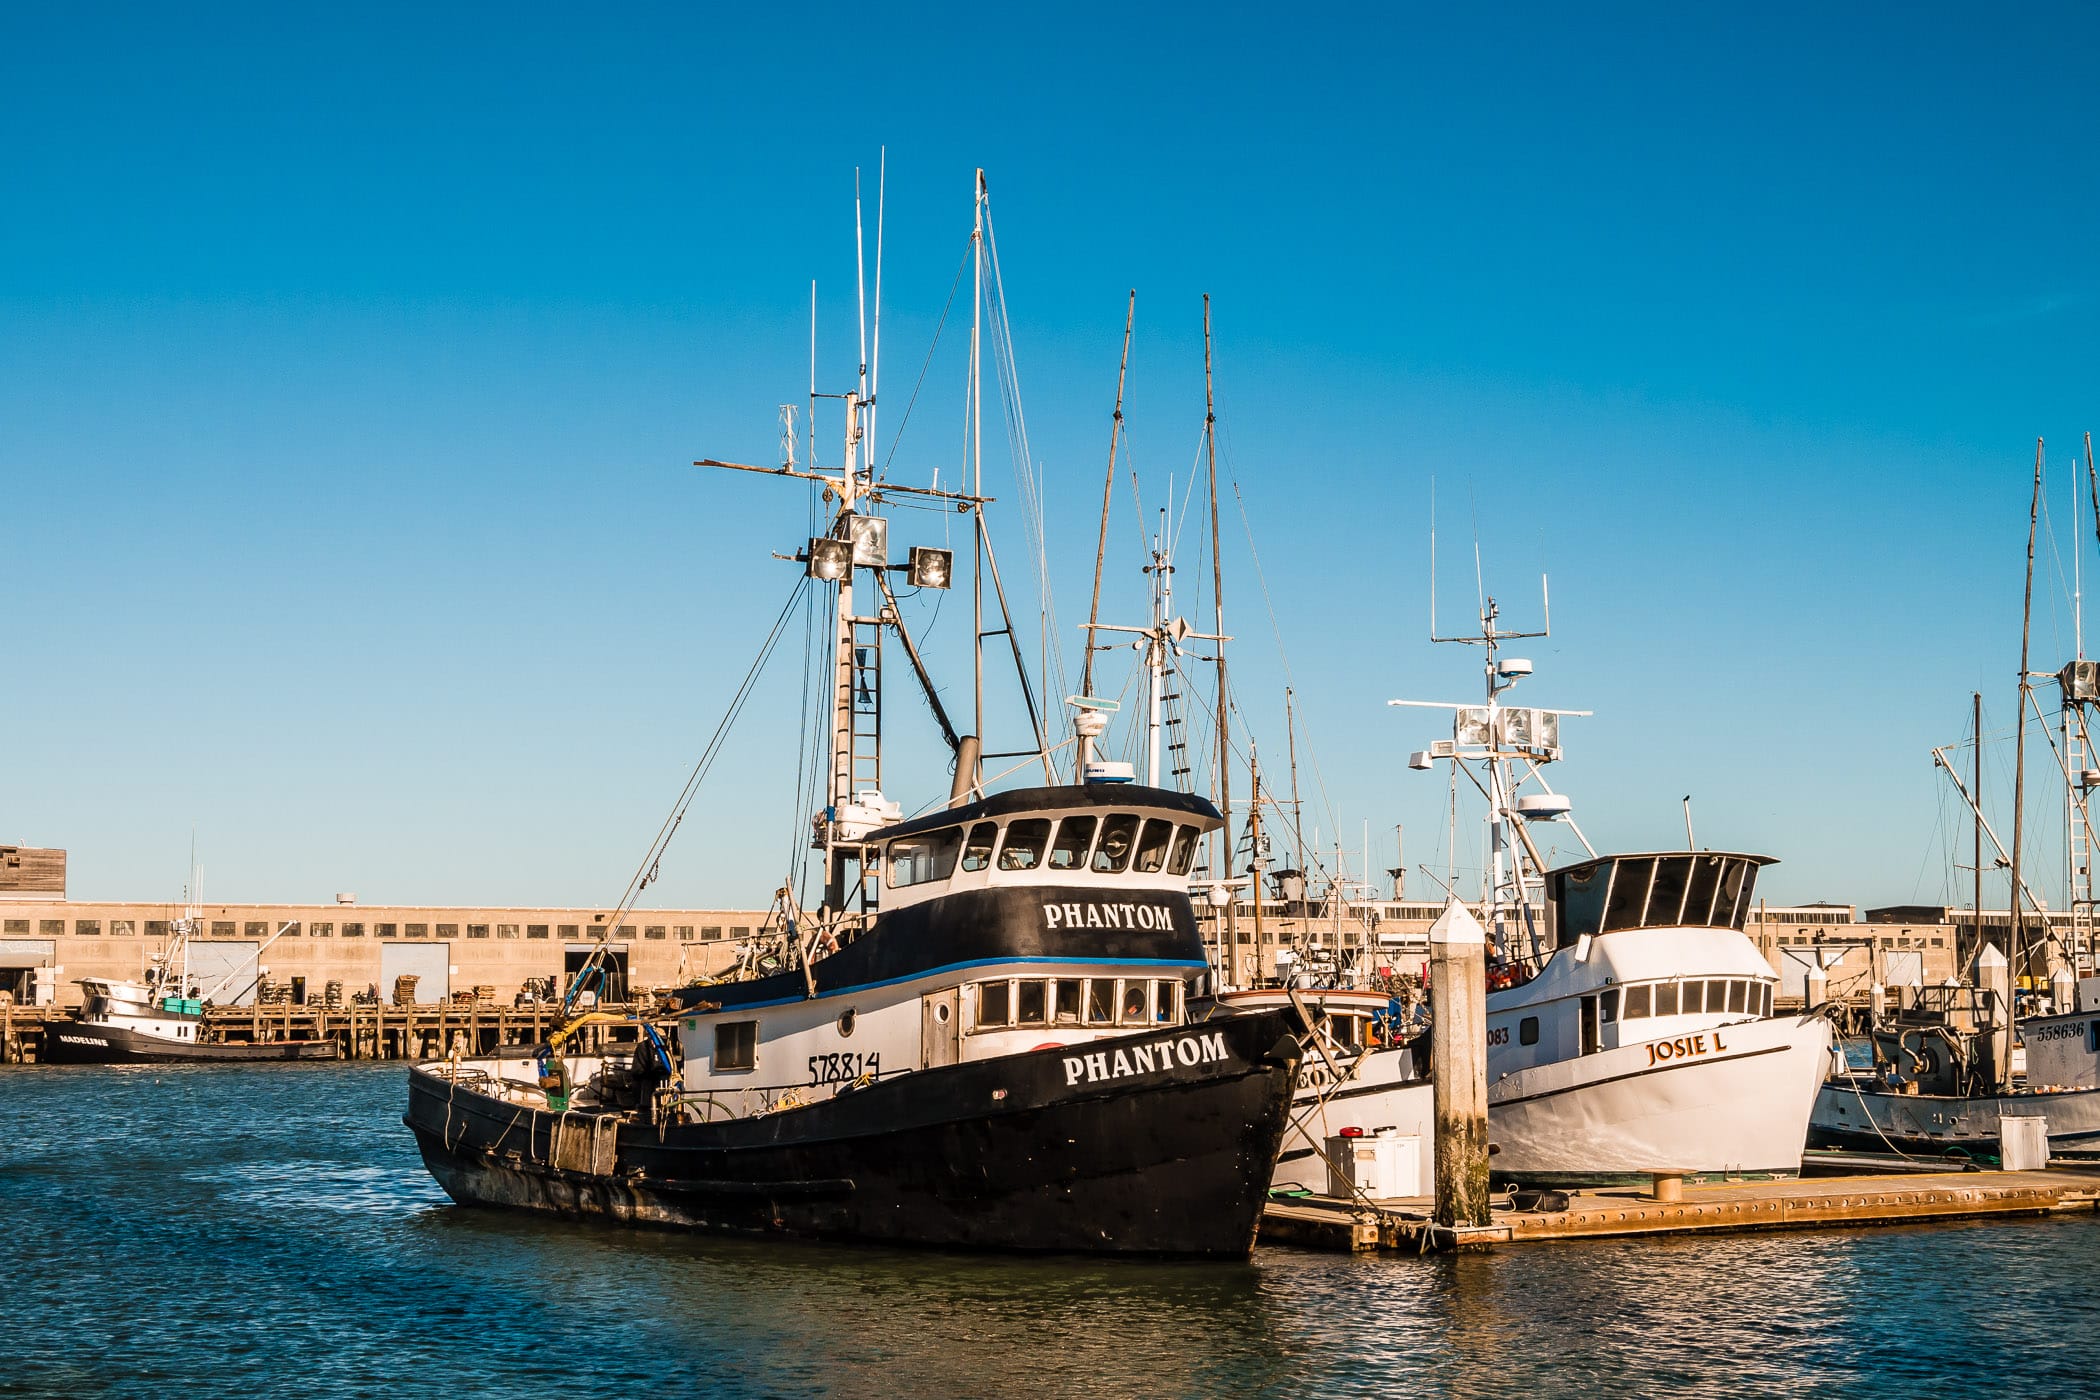 Boats docked at a pier along San Francisco's Fisherman's Wharf.